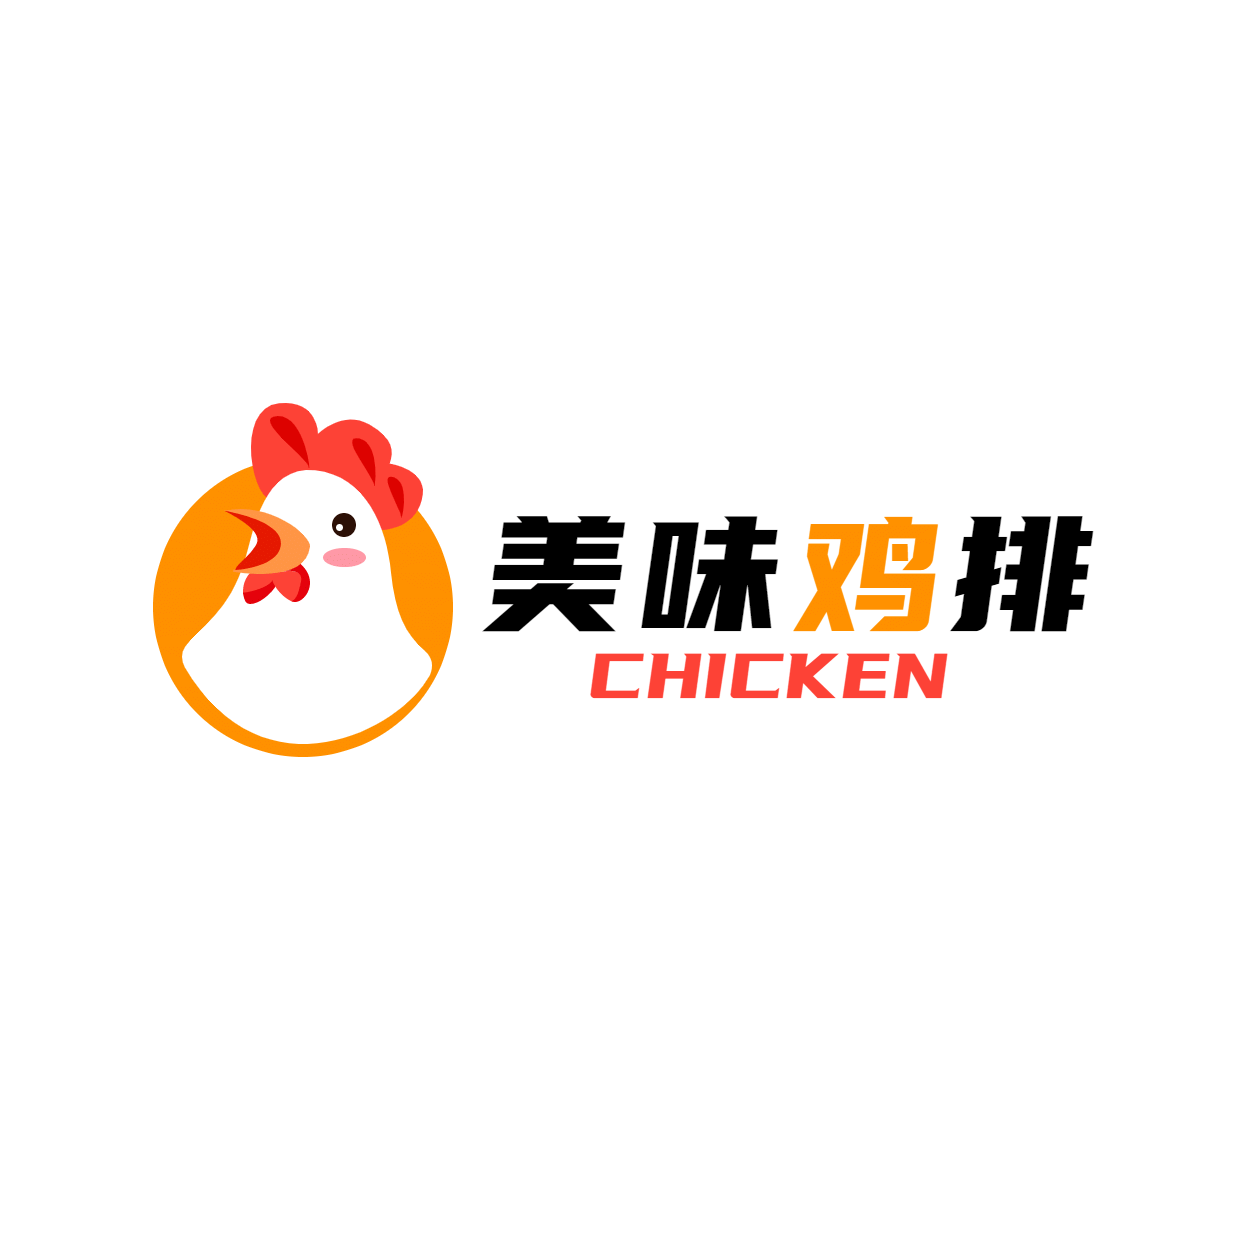 鸡排炸鸡企业宣传简约LOGO图形